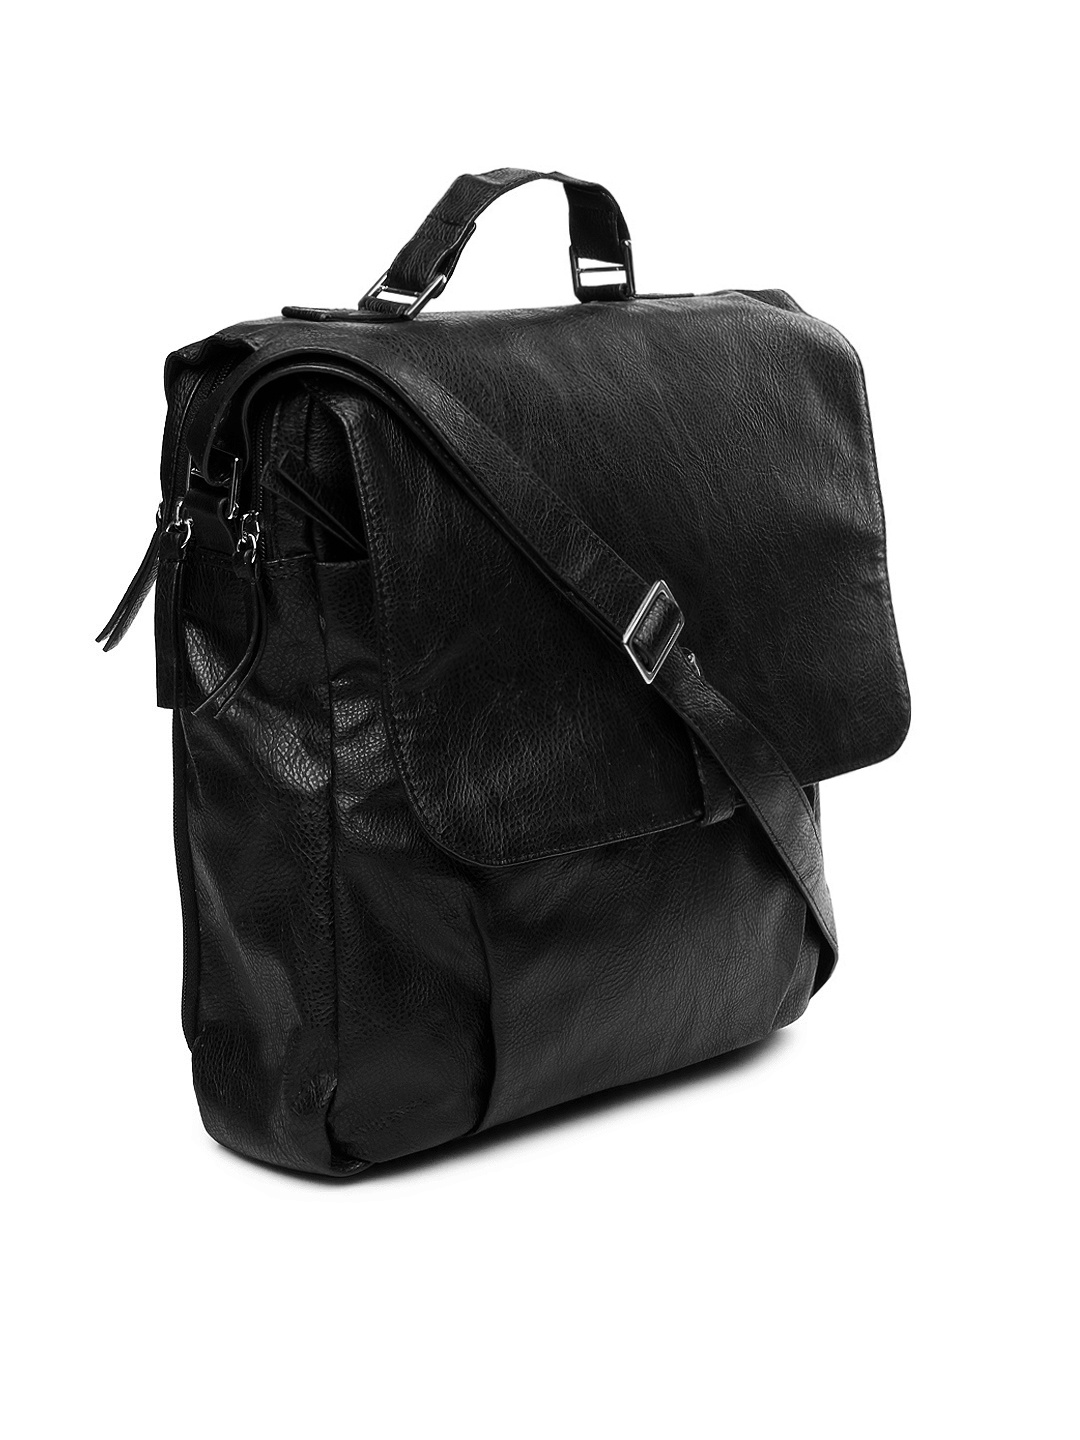 Myntra Baggit Black Sling Bag 435432 | Buy Myntra Baggit Handbags at best price online. All ...